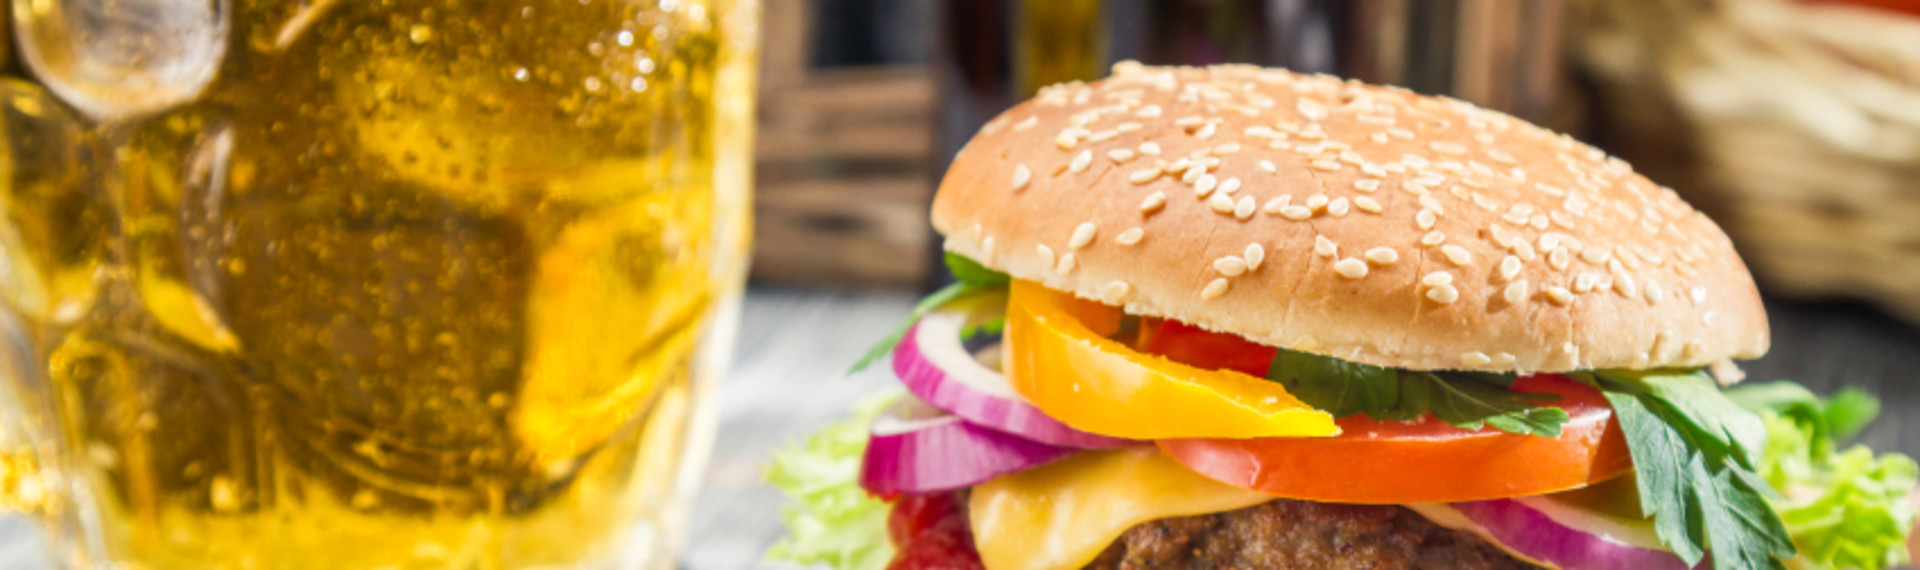 Verdensklasse burger & øl - Den hellige gral af herremiddage